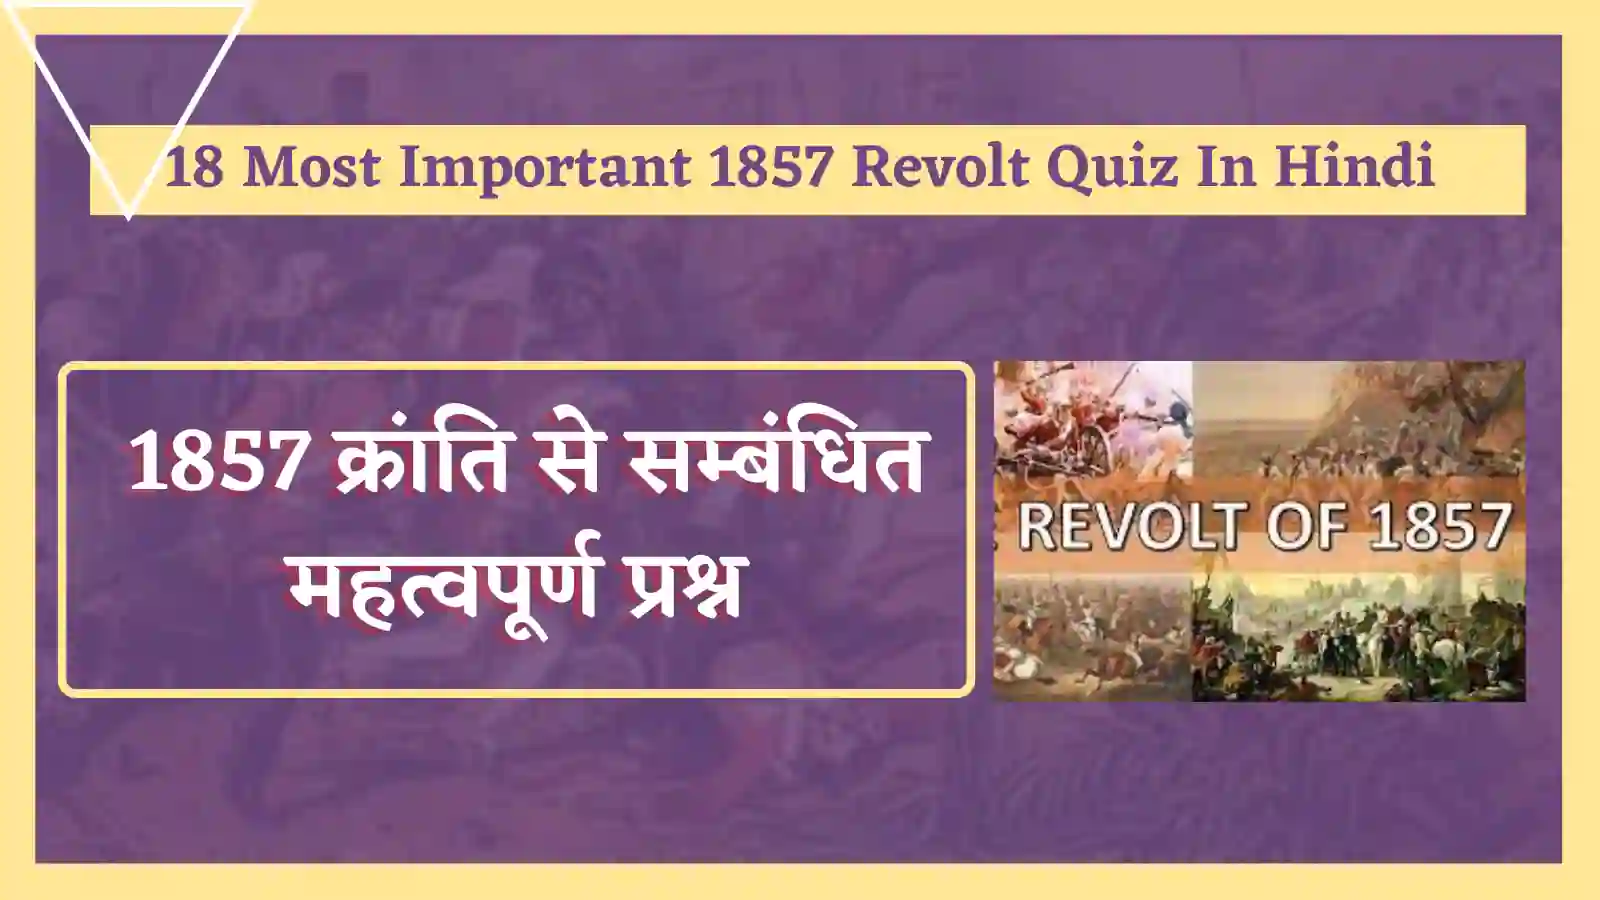 18 Most Important 1857 Revolt Quiz In Hindi